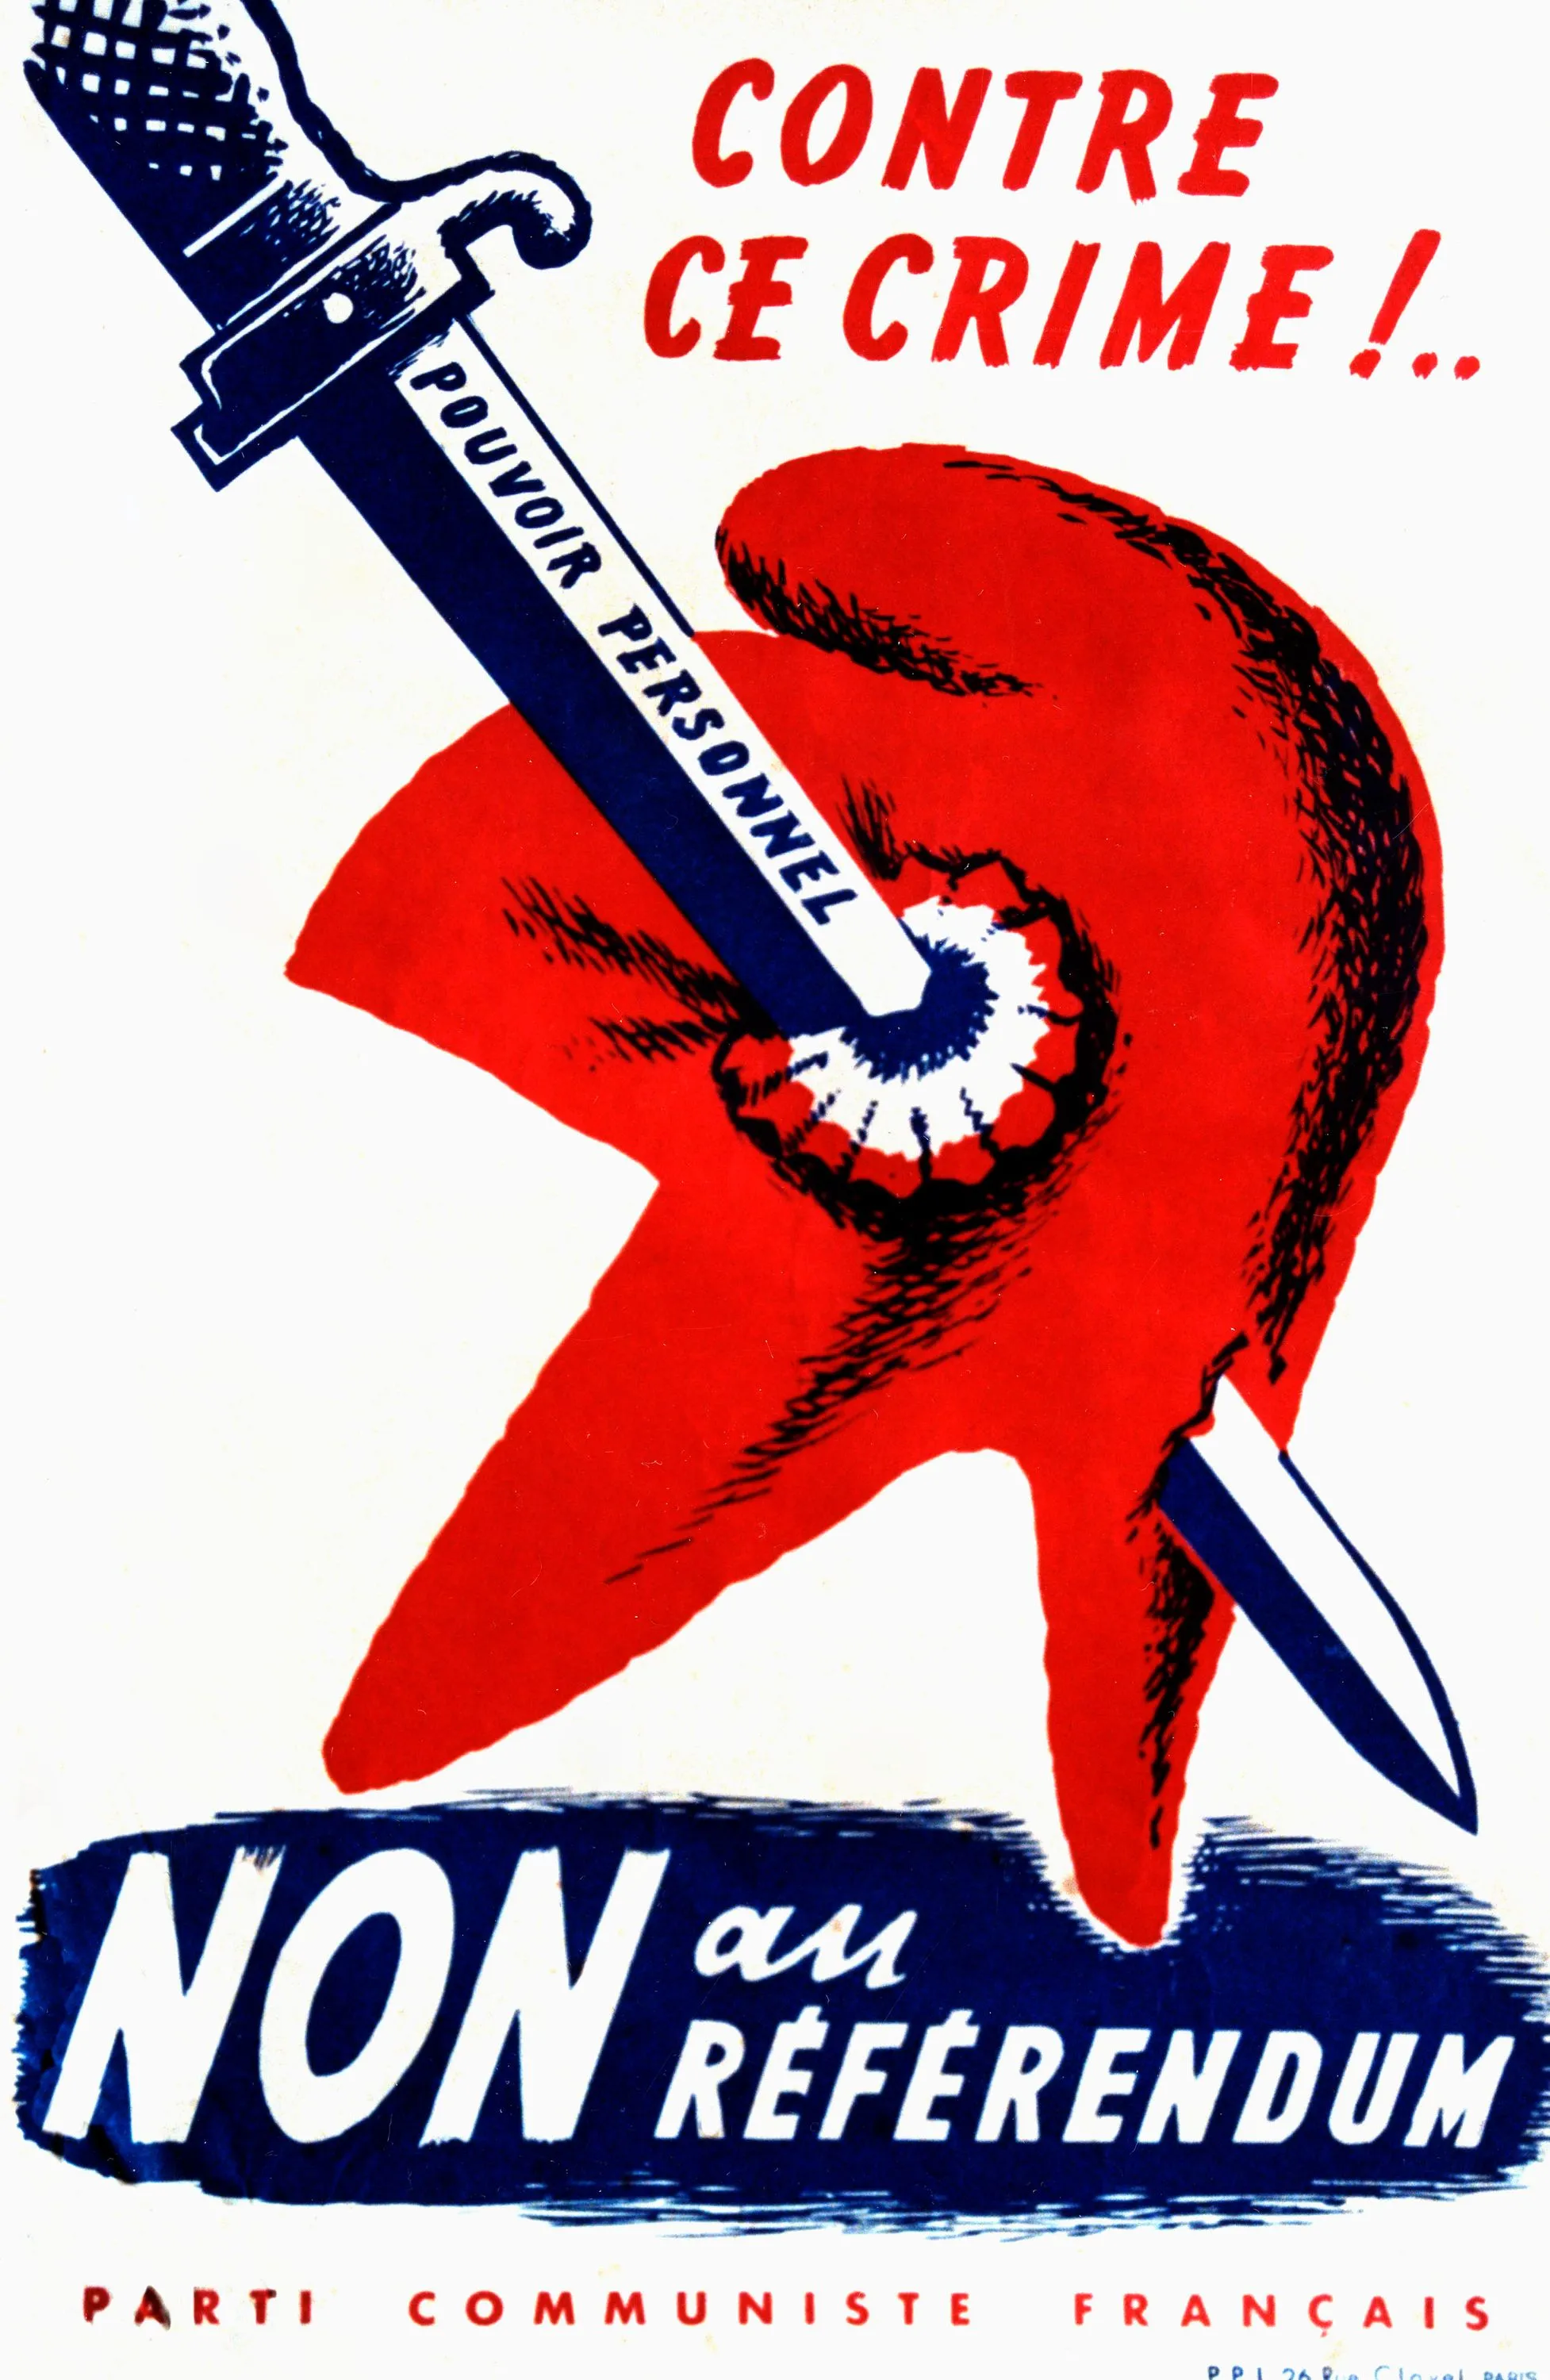 Affiche antigaulliste réalisée par le Parti communiste français, 1958